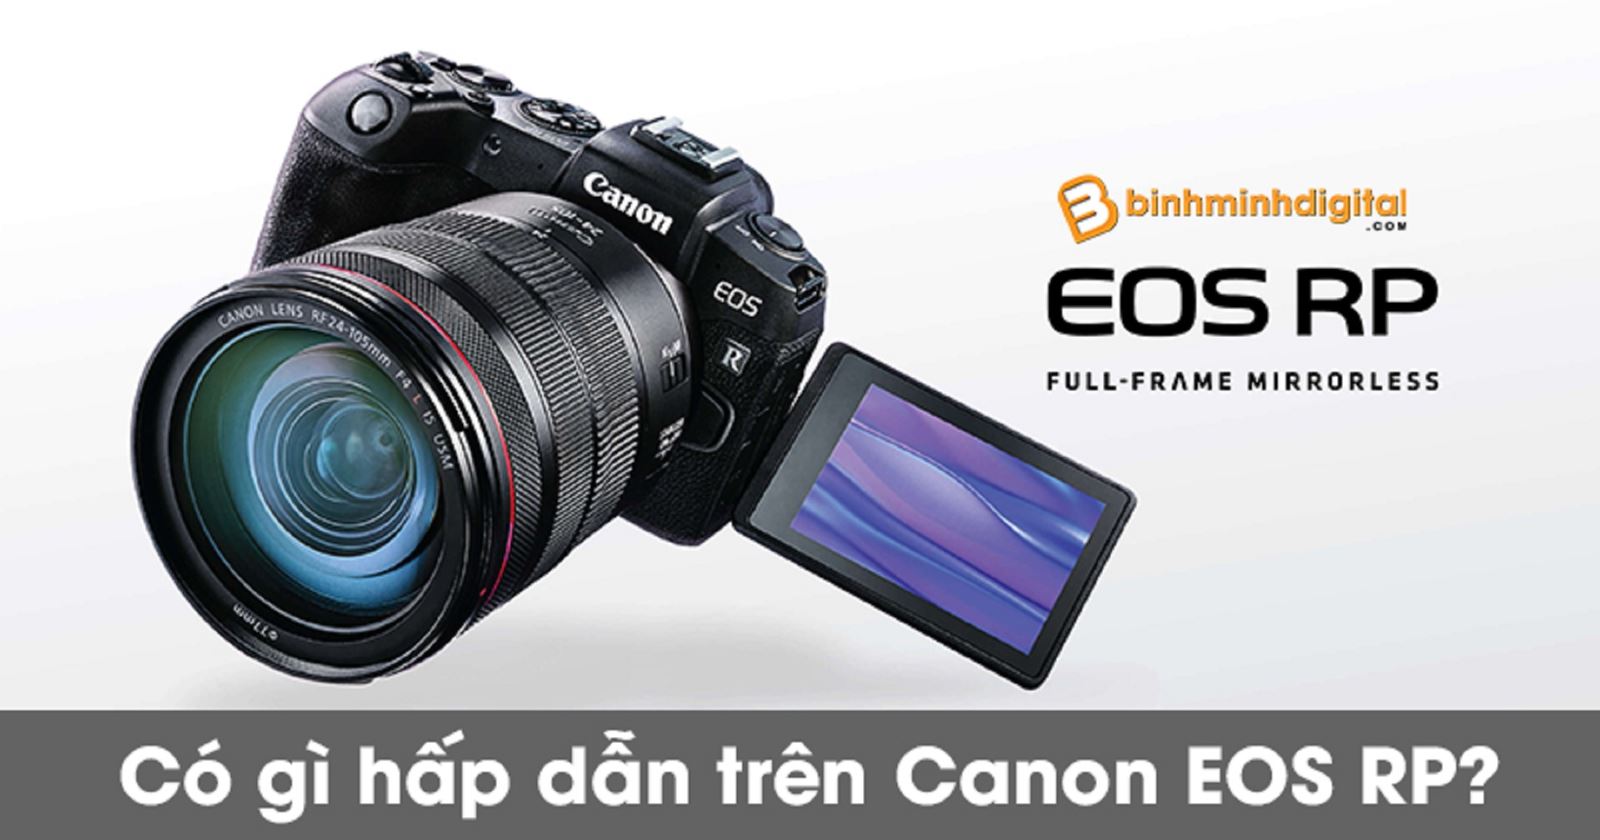 Có gì hấp dẫn trên Canon EOS RP?